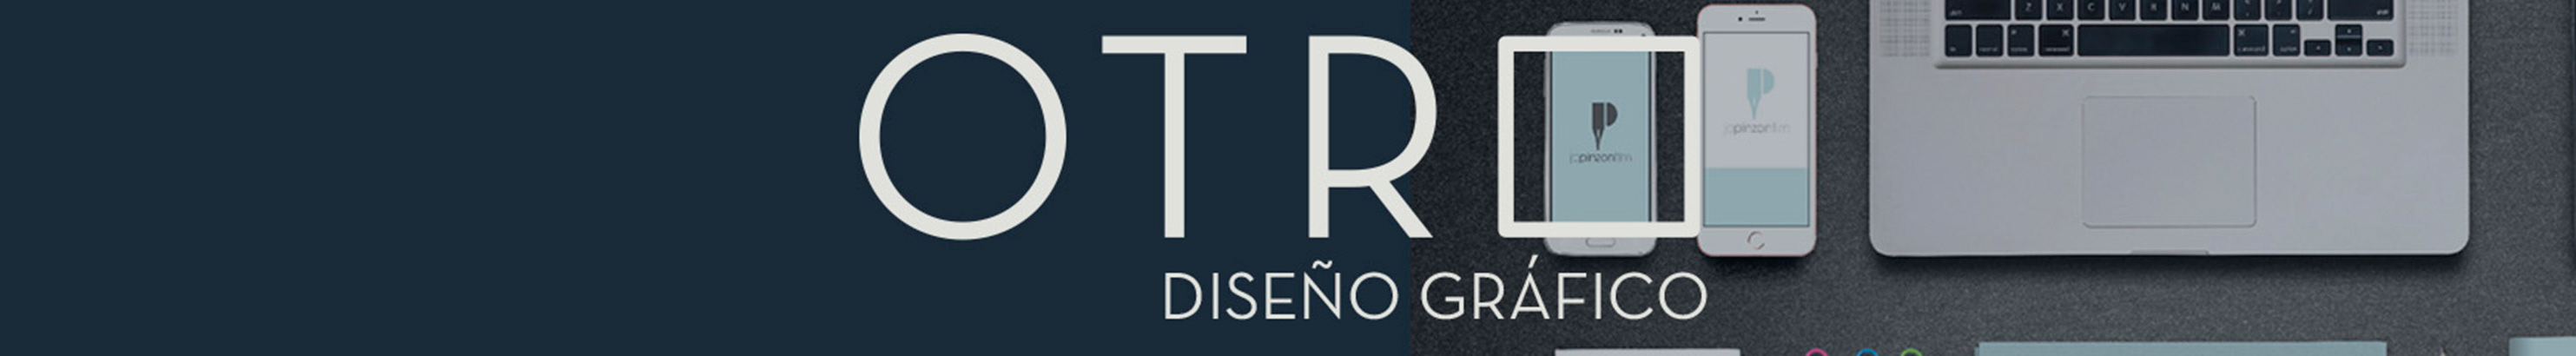 OTRO Diseño's profile banner